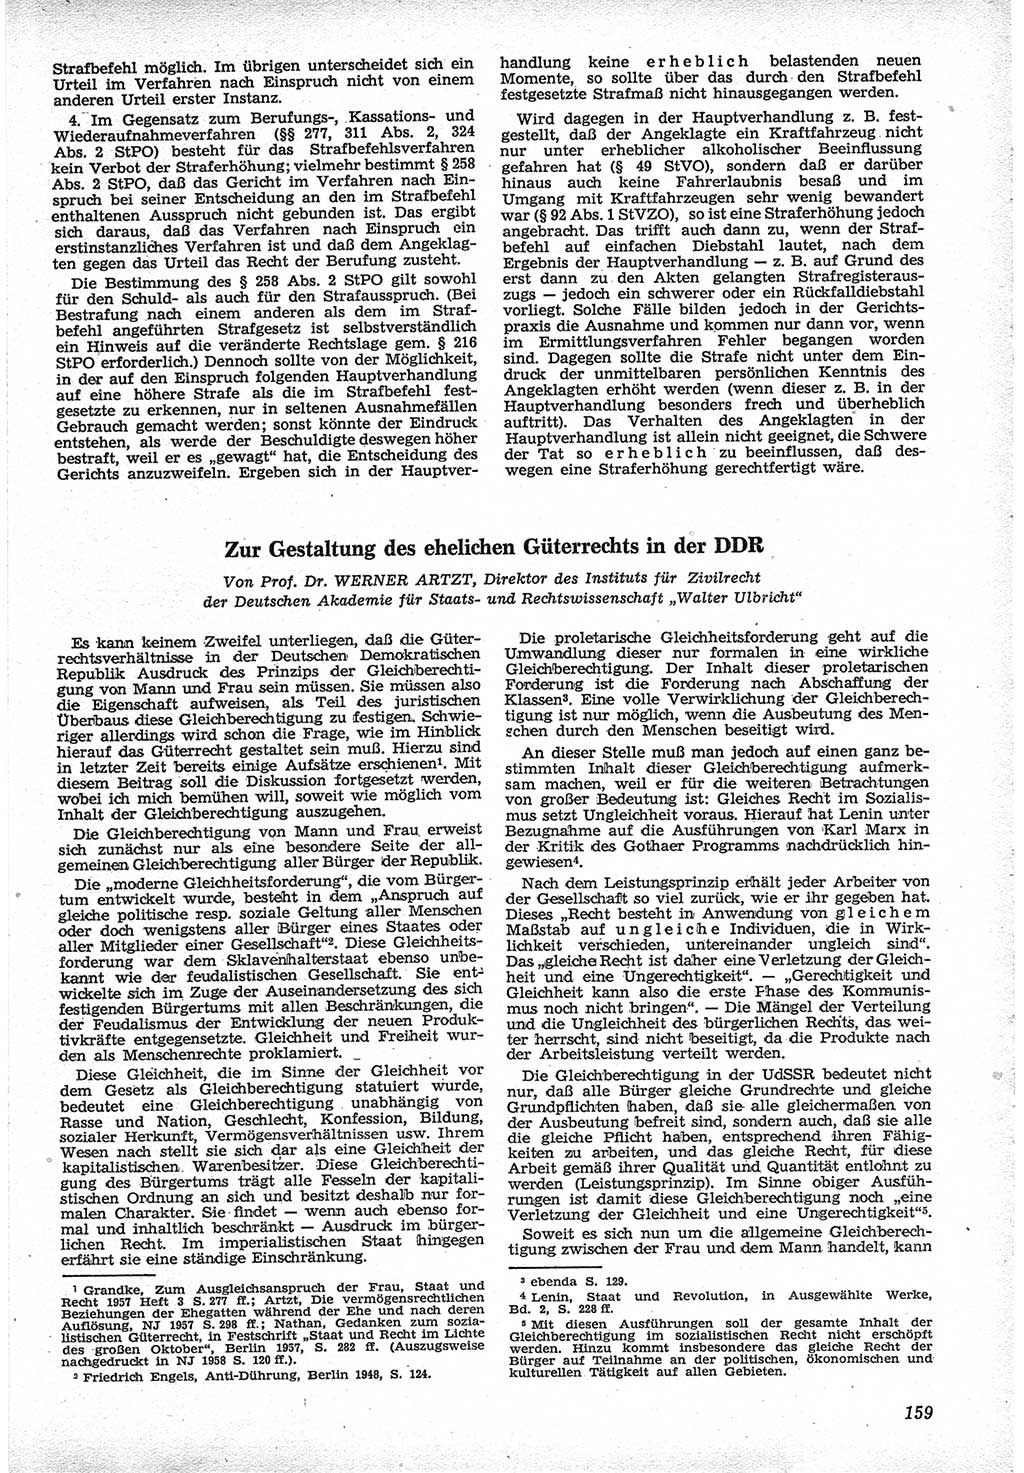 Neue Justiz (NJ), Zeitschrift für Recht und Rechtswissenschaft [Deutsche Demokratische Republik (DDR)], 12. Jahrgang 1958, Seite 159 (NJ DDR 1958, S. 159)